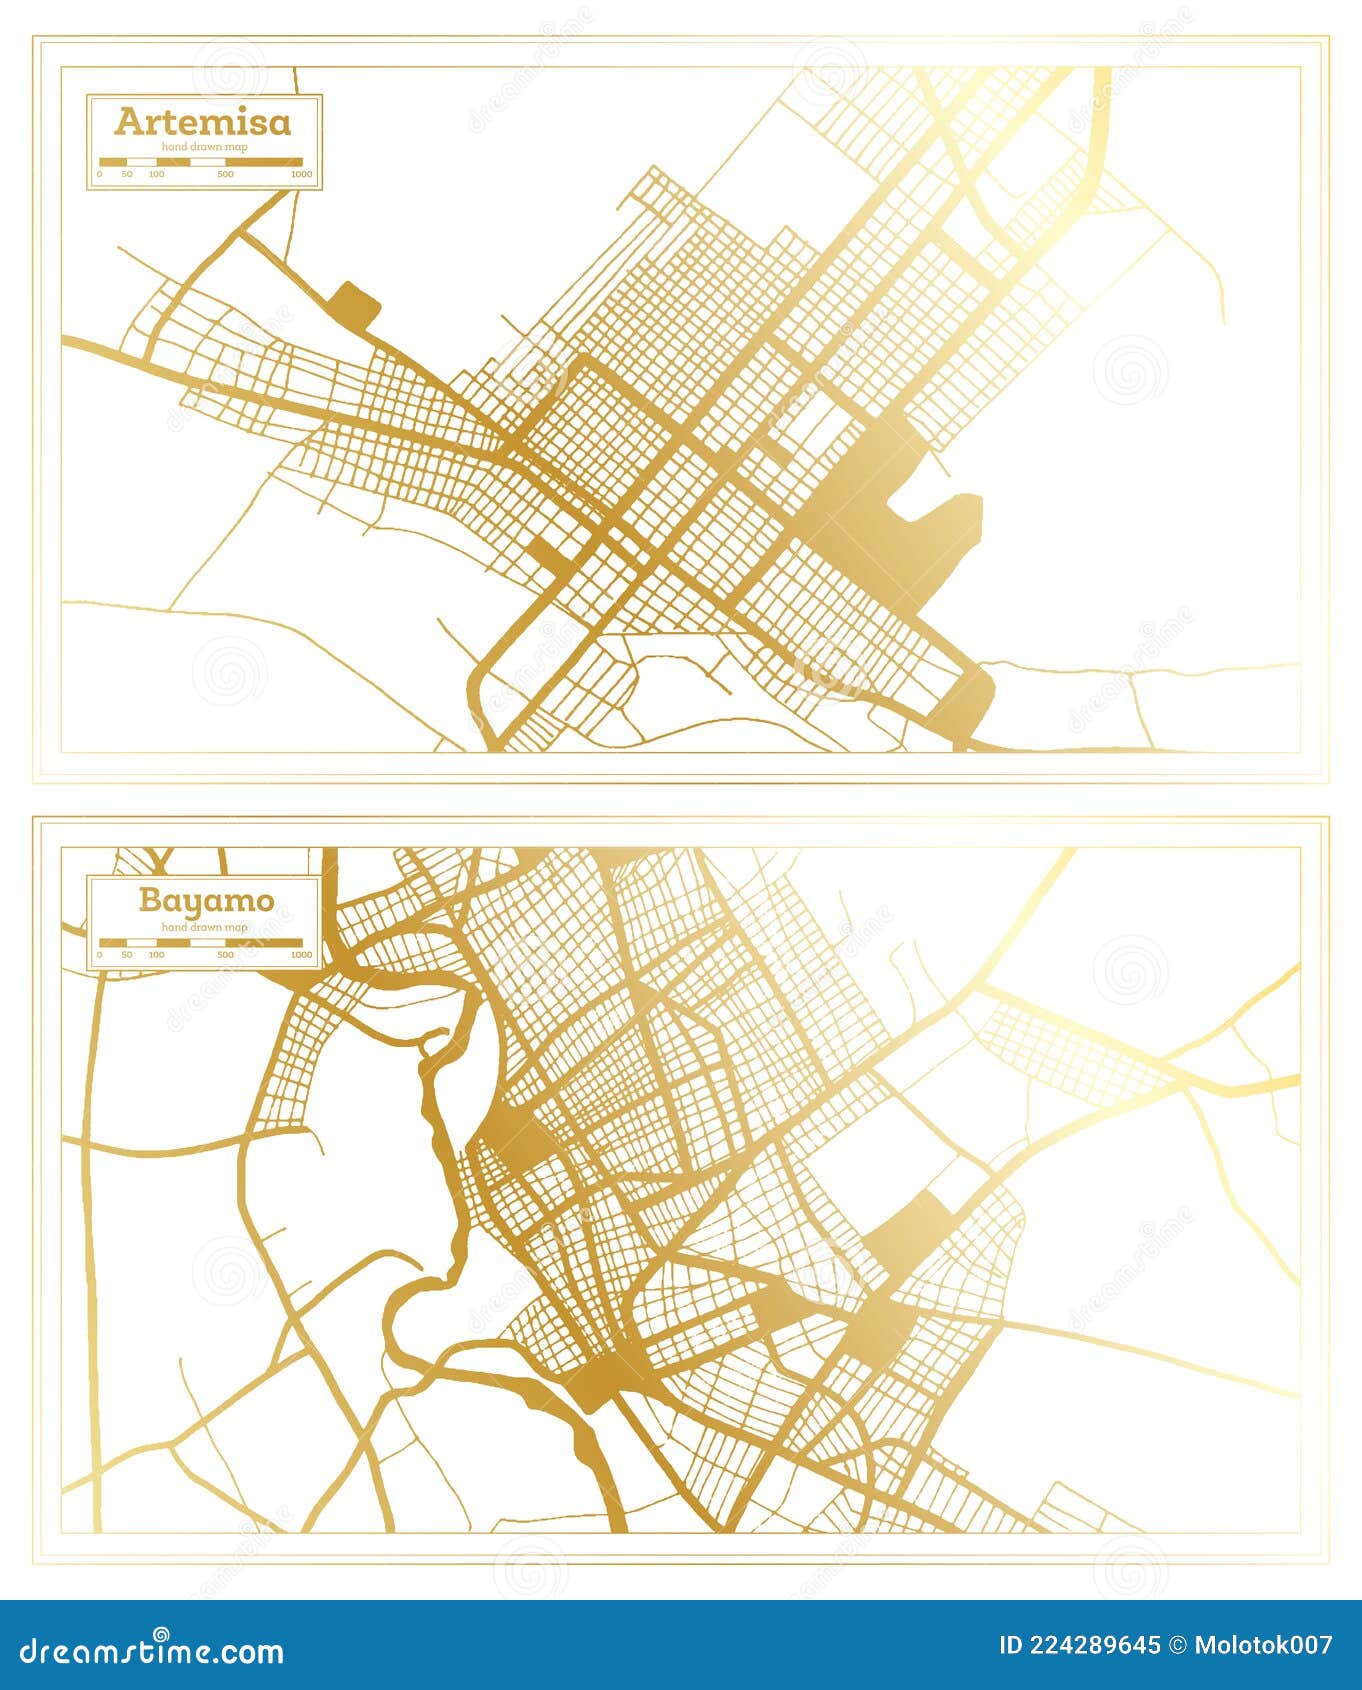 bayamo and artemisa cuba city map set